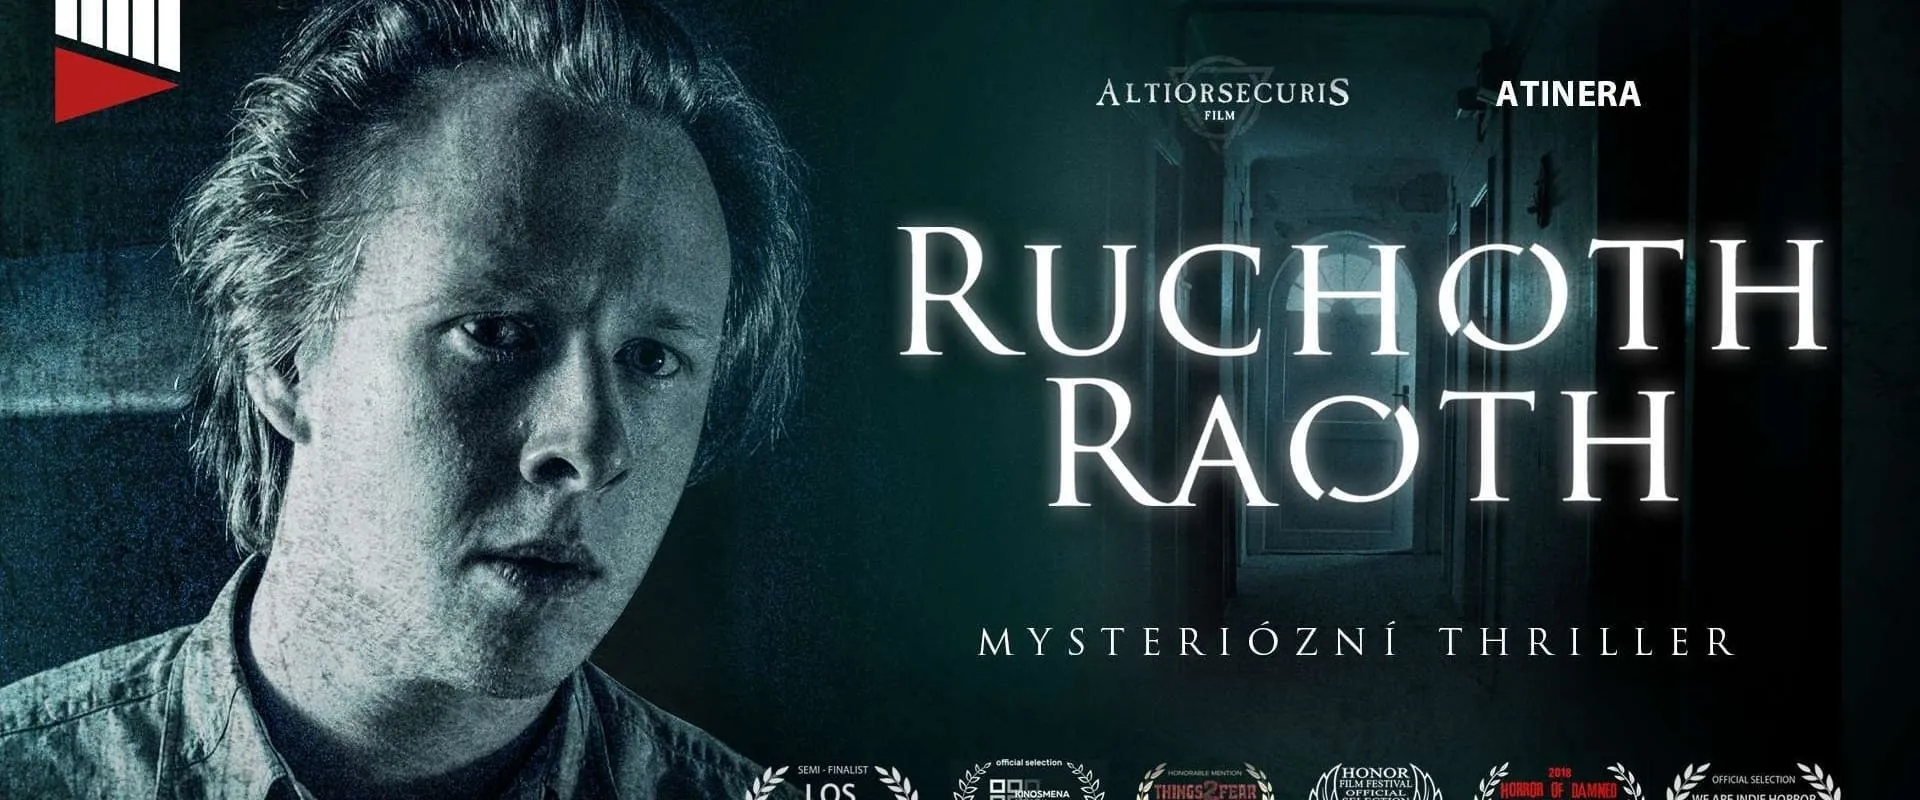 Ruchoth Raoth (2017)